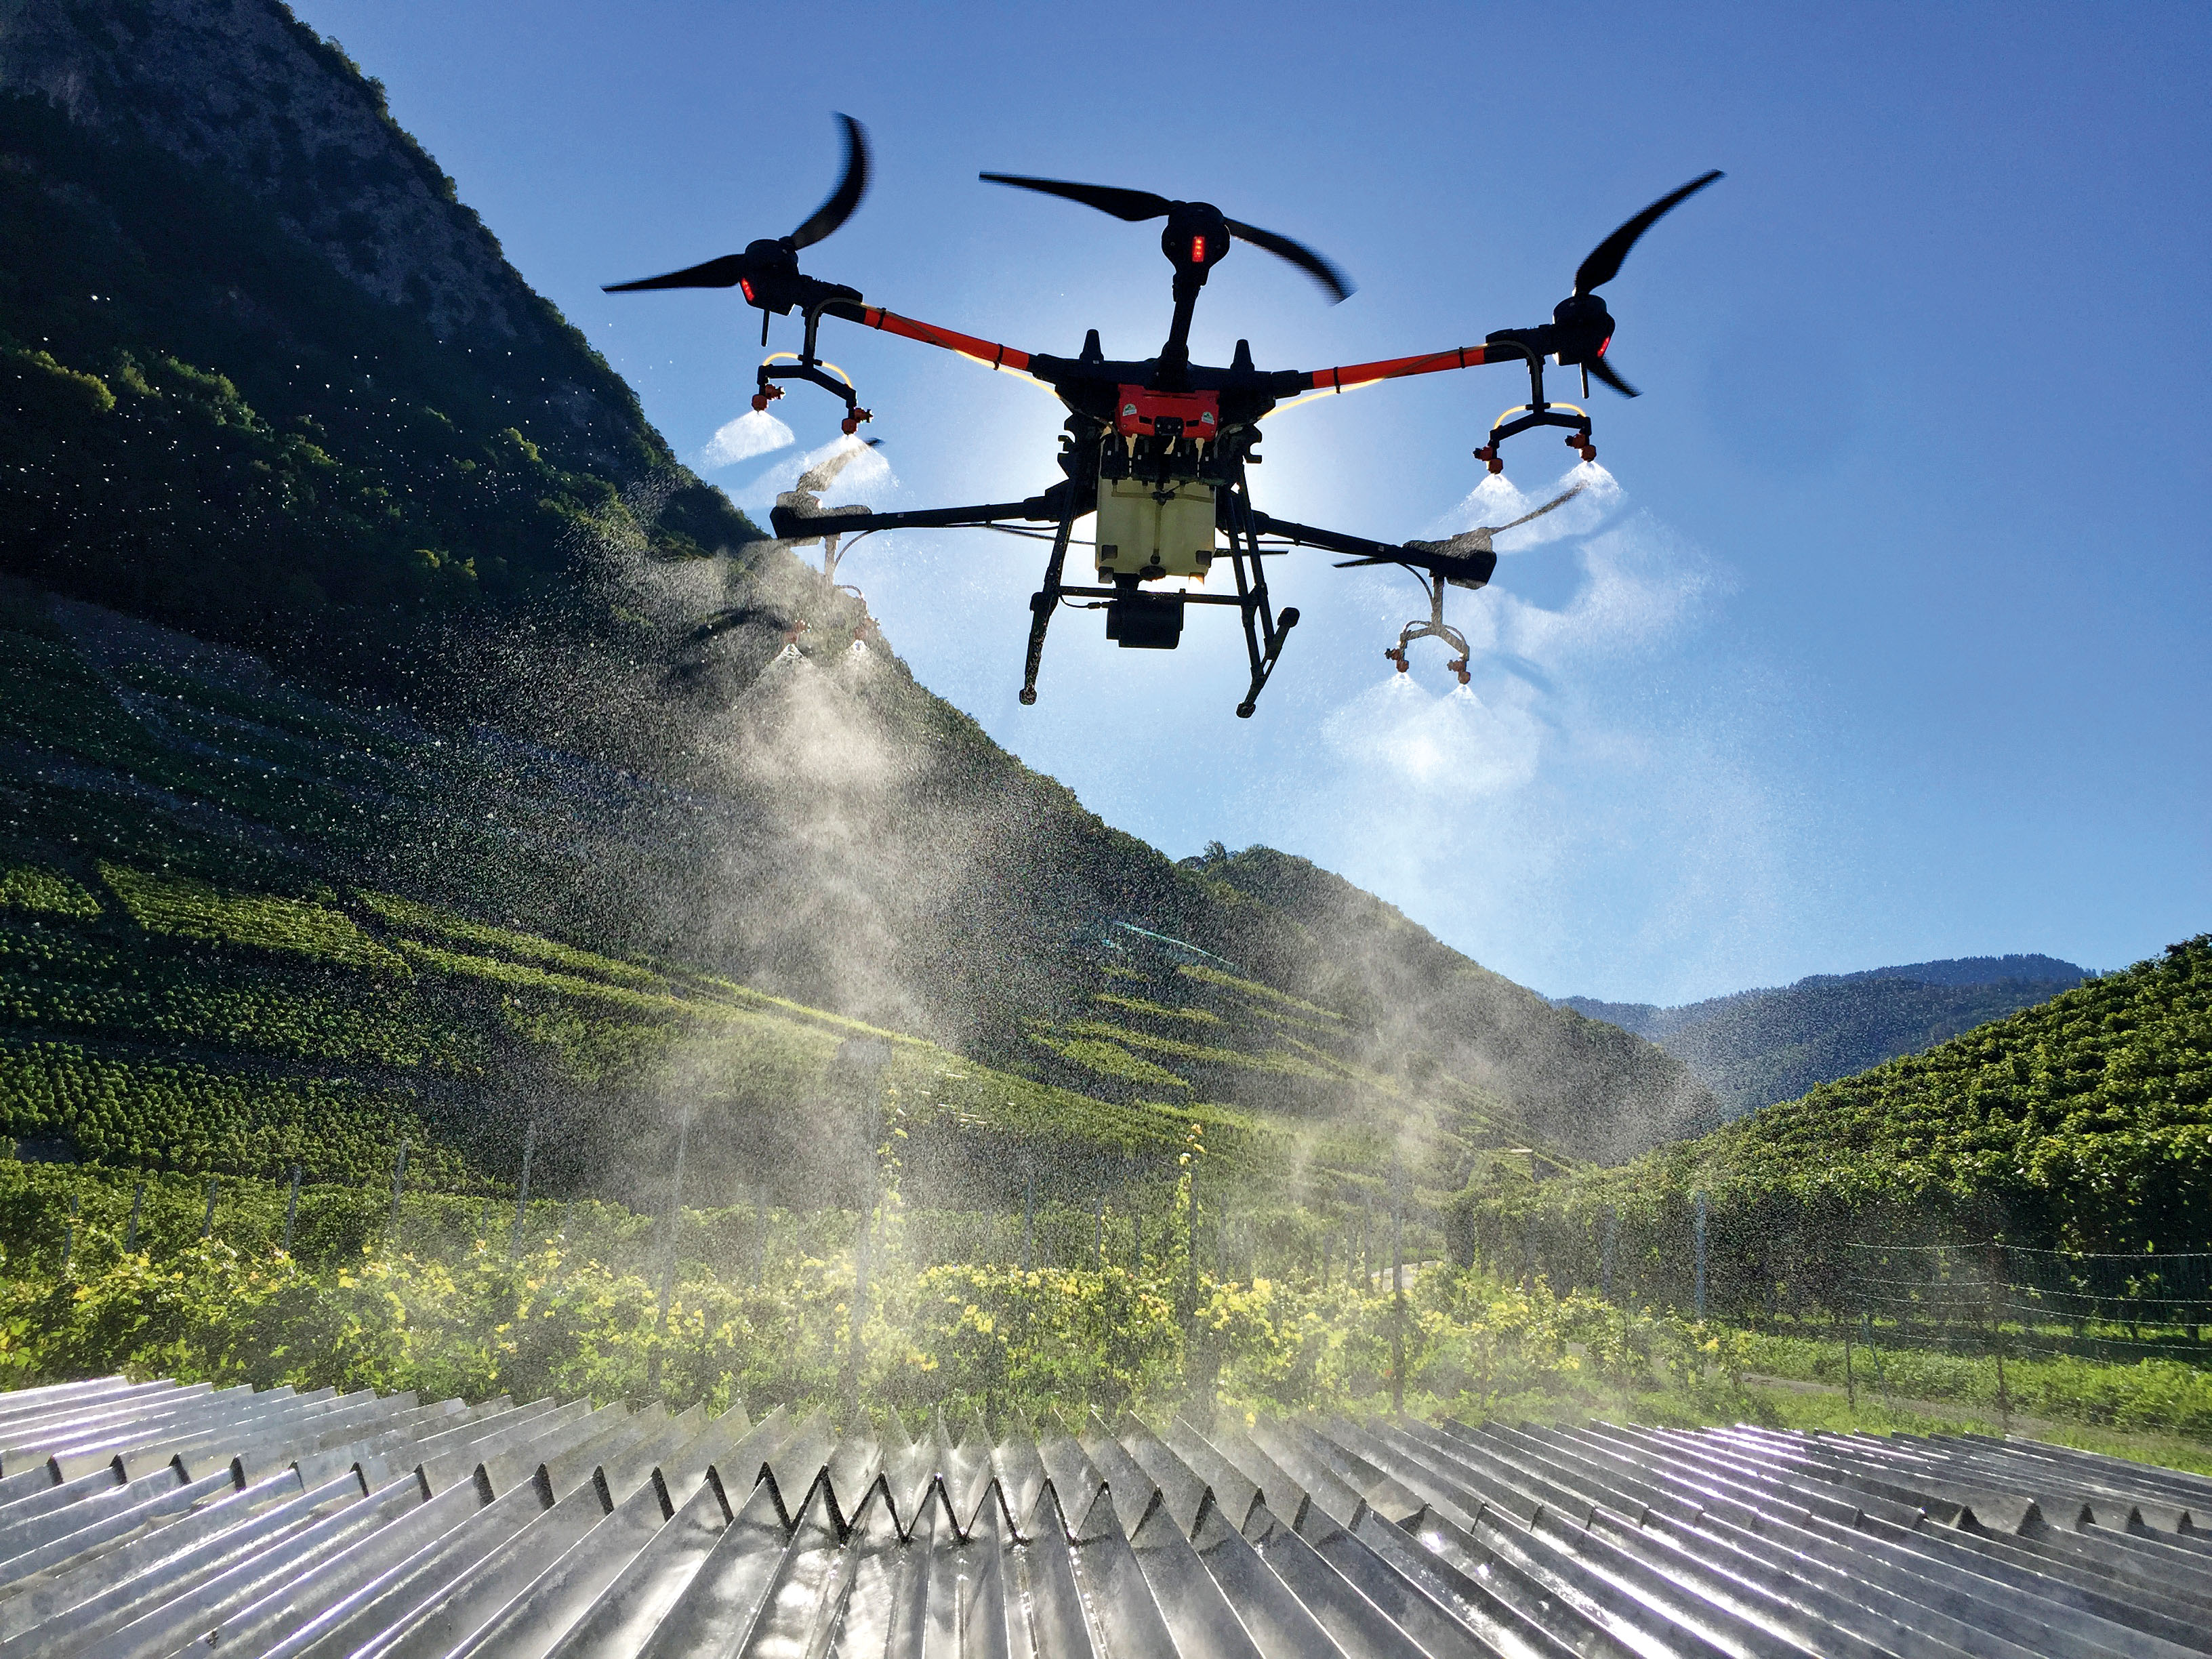 Bewertung der Leistung von Drohnen für Pflanzenschutzbehandlungen in Reben